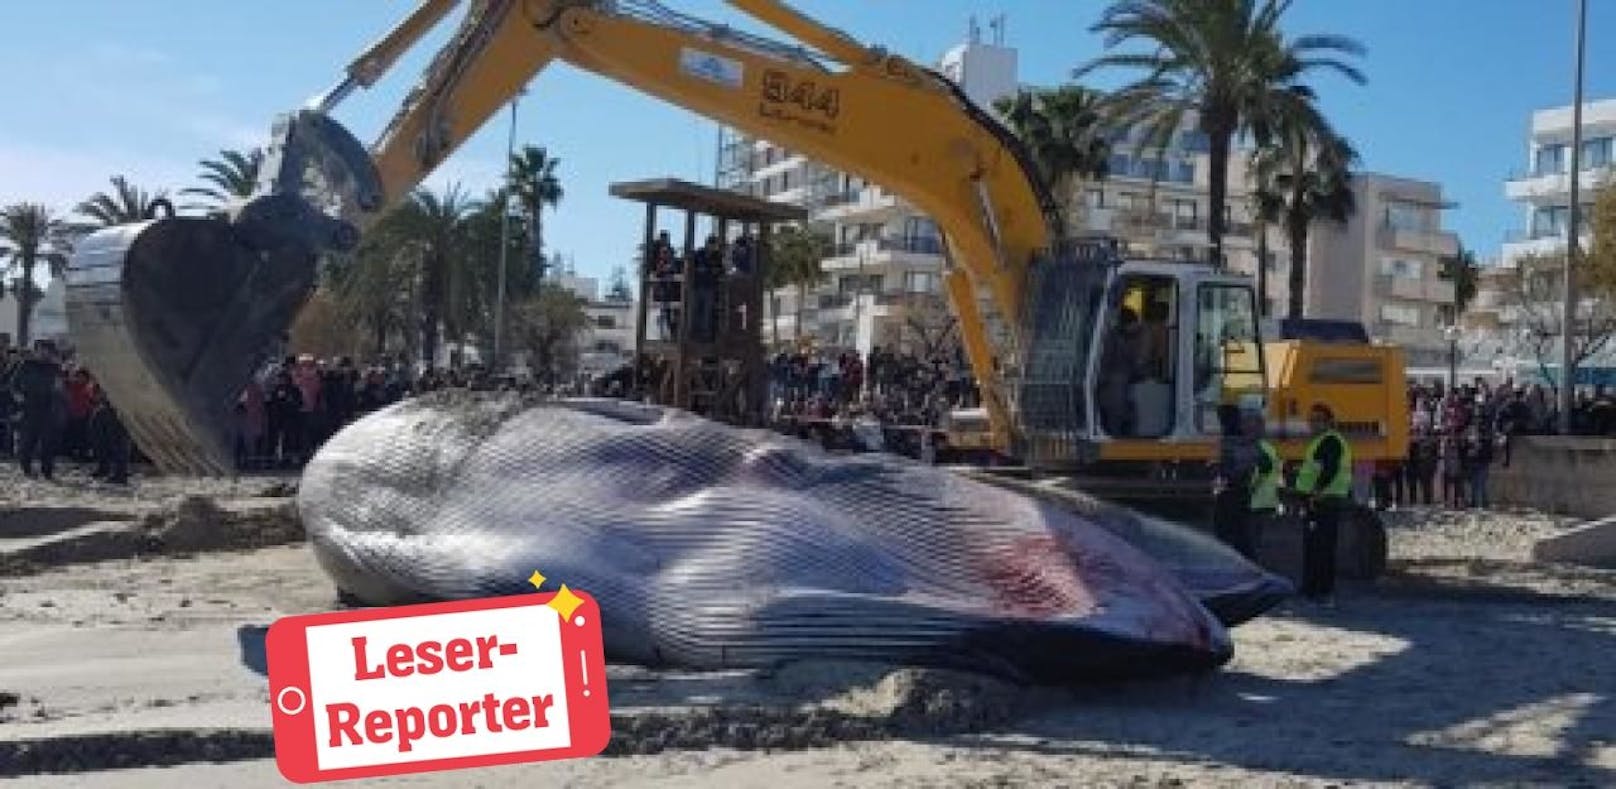 "Toter Wal auf Mallorca – das ist verrückt"